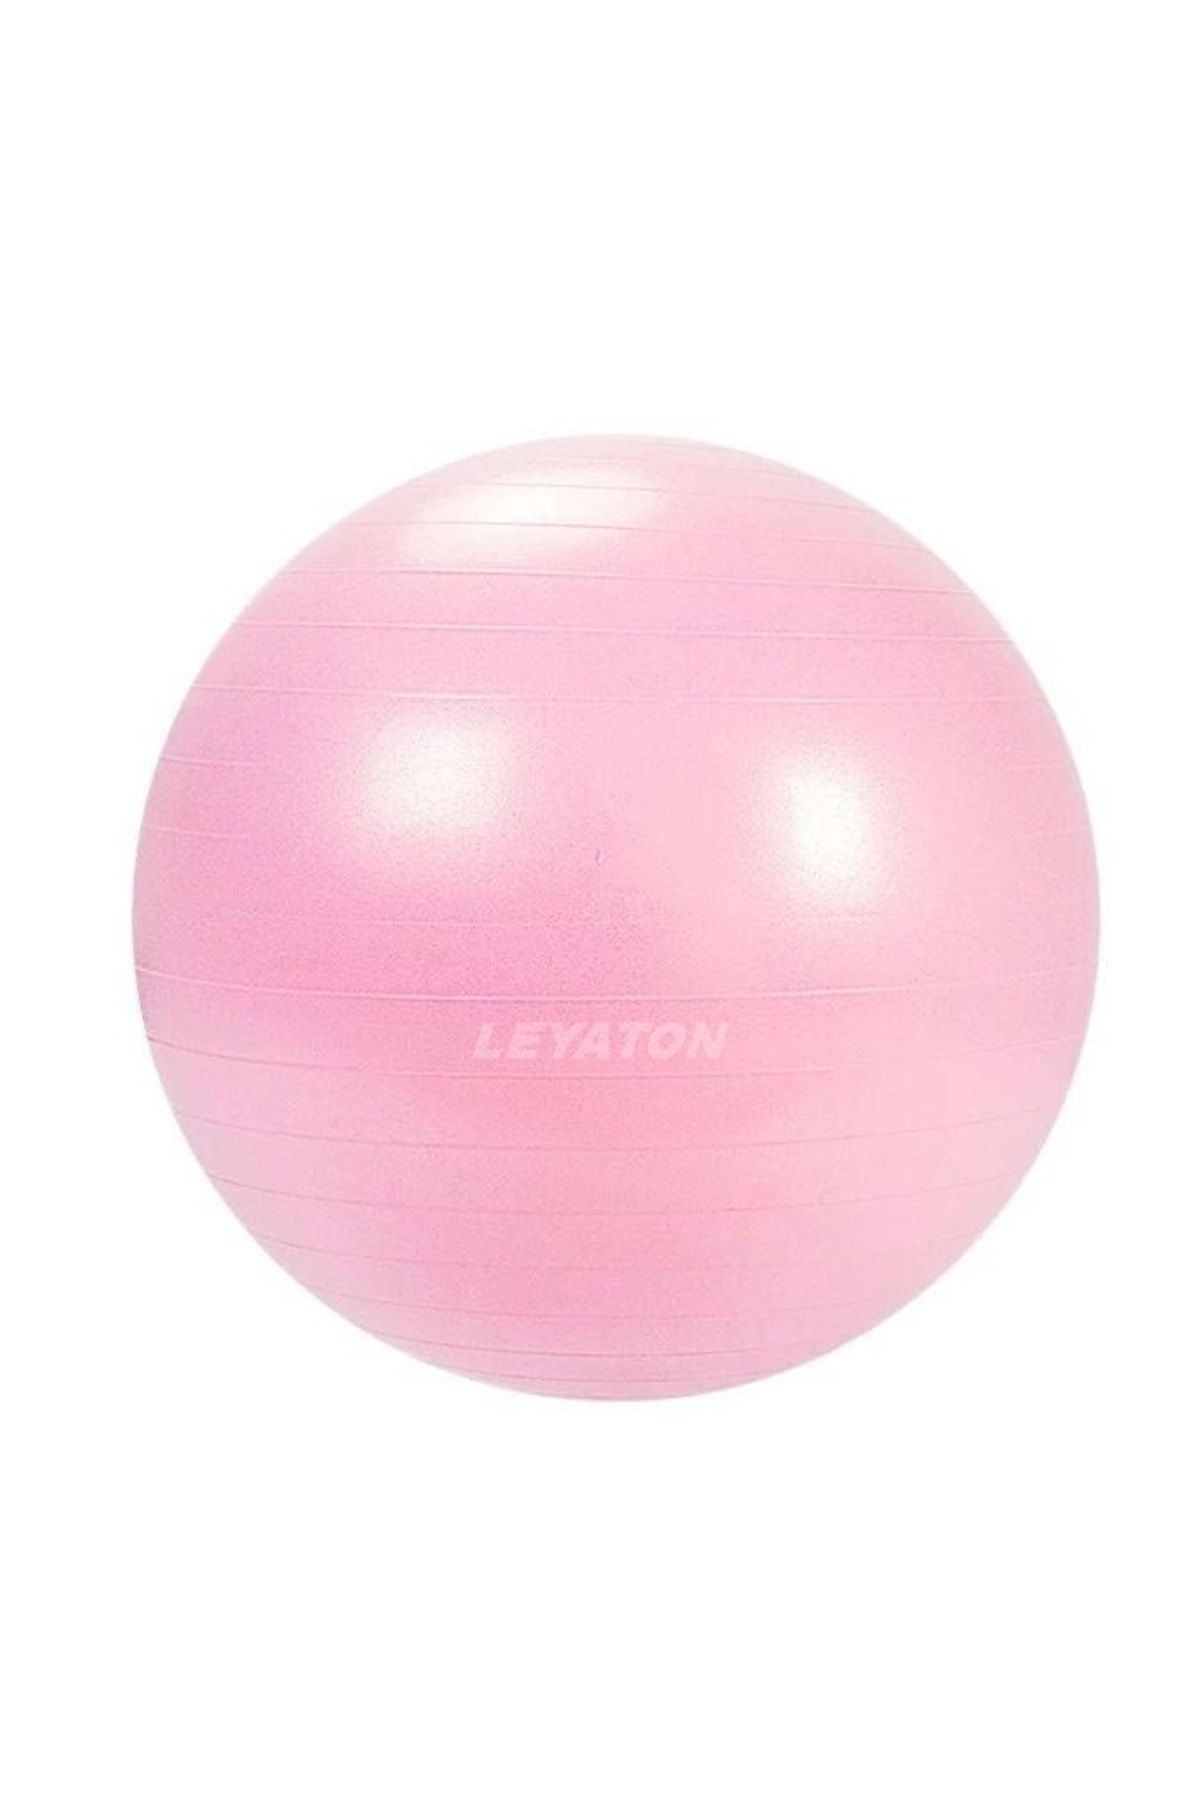 Leyaton 65 Cm Fitilli Pilates Topu Dayanıklı Yüksek Kalite Pilates Topu Pompa Hediye